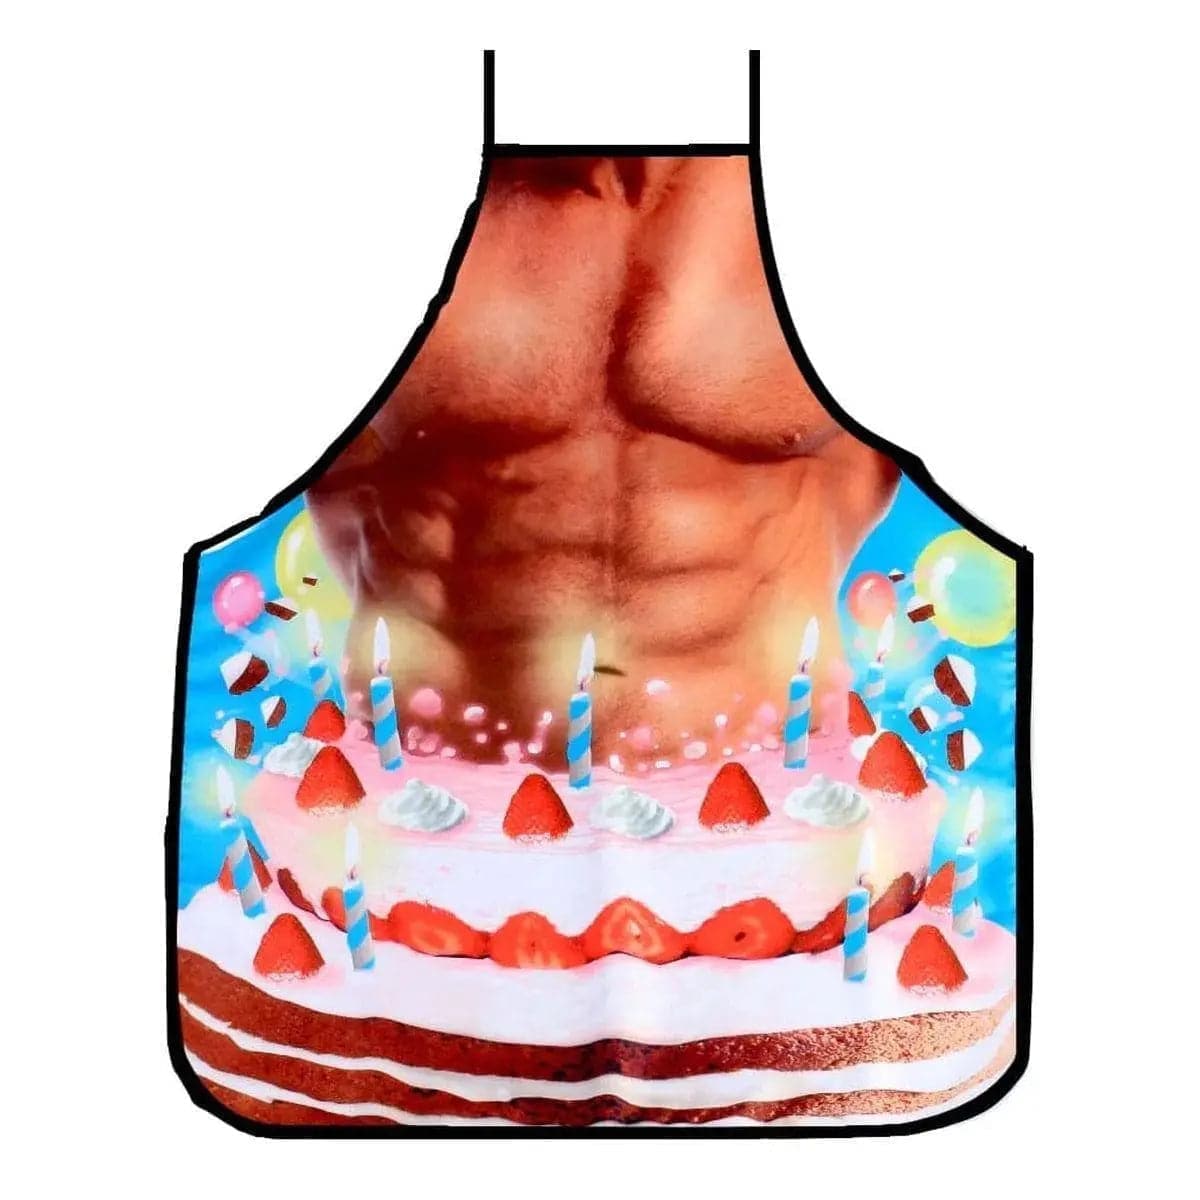 Avental Bolo de Aniversário com Corpo de Homem - Pérola SexShop